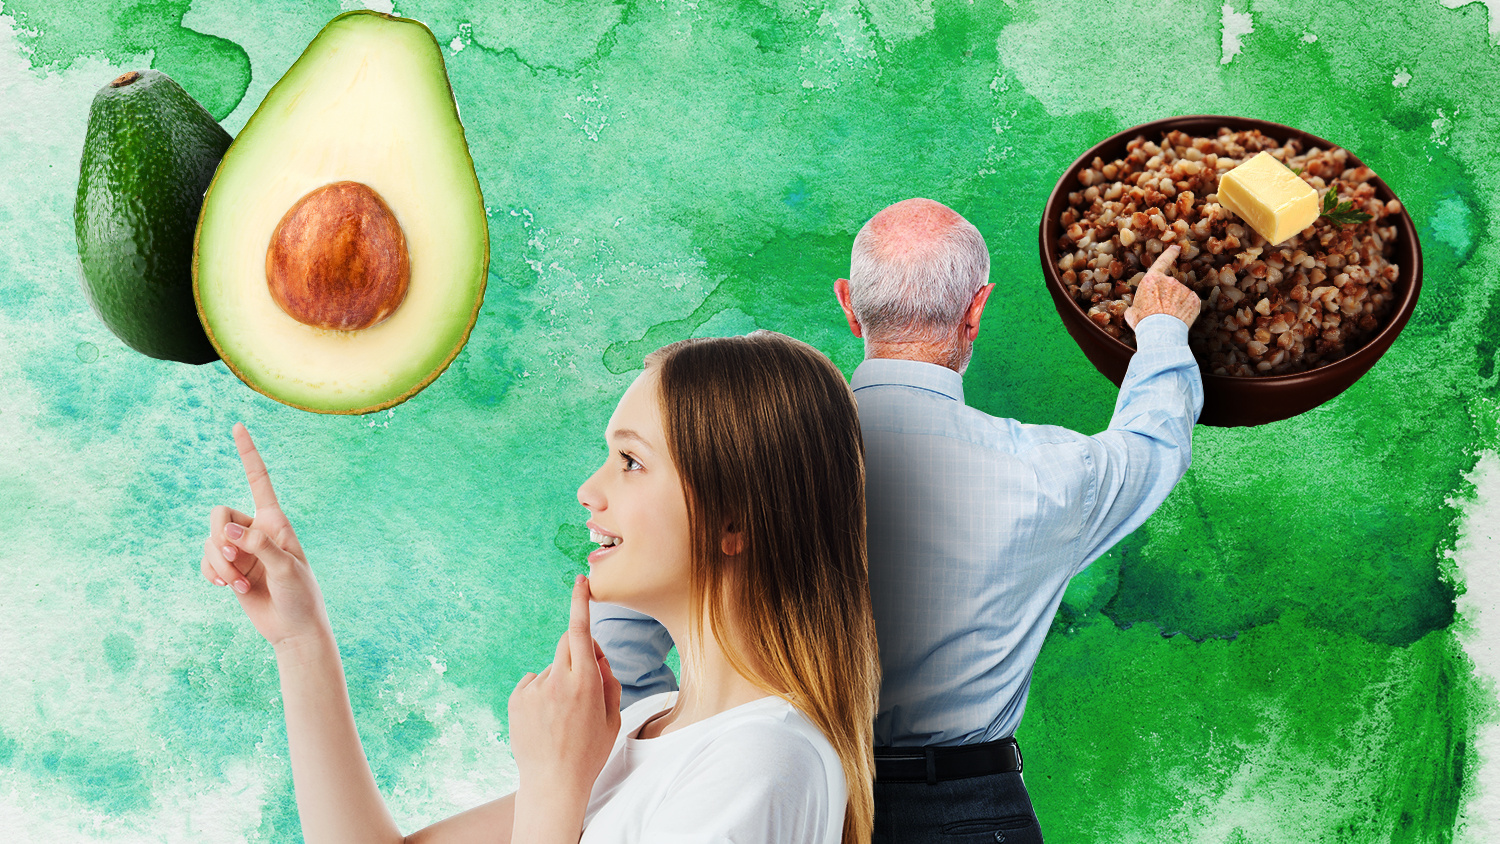 «Брускетта с авокадо по цене полноценного ланча»: как разные поколения относятся к еде